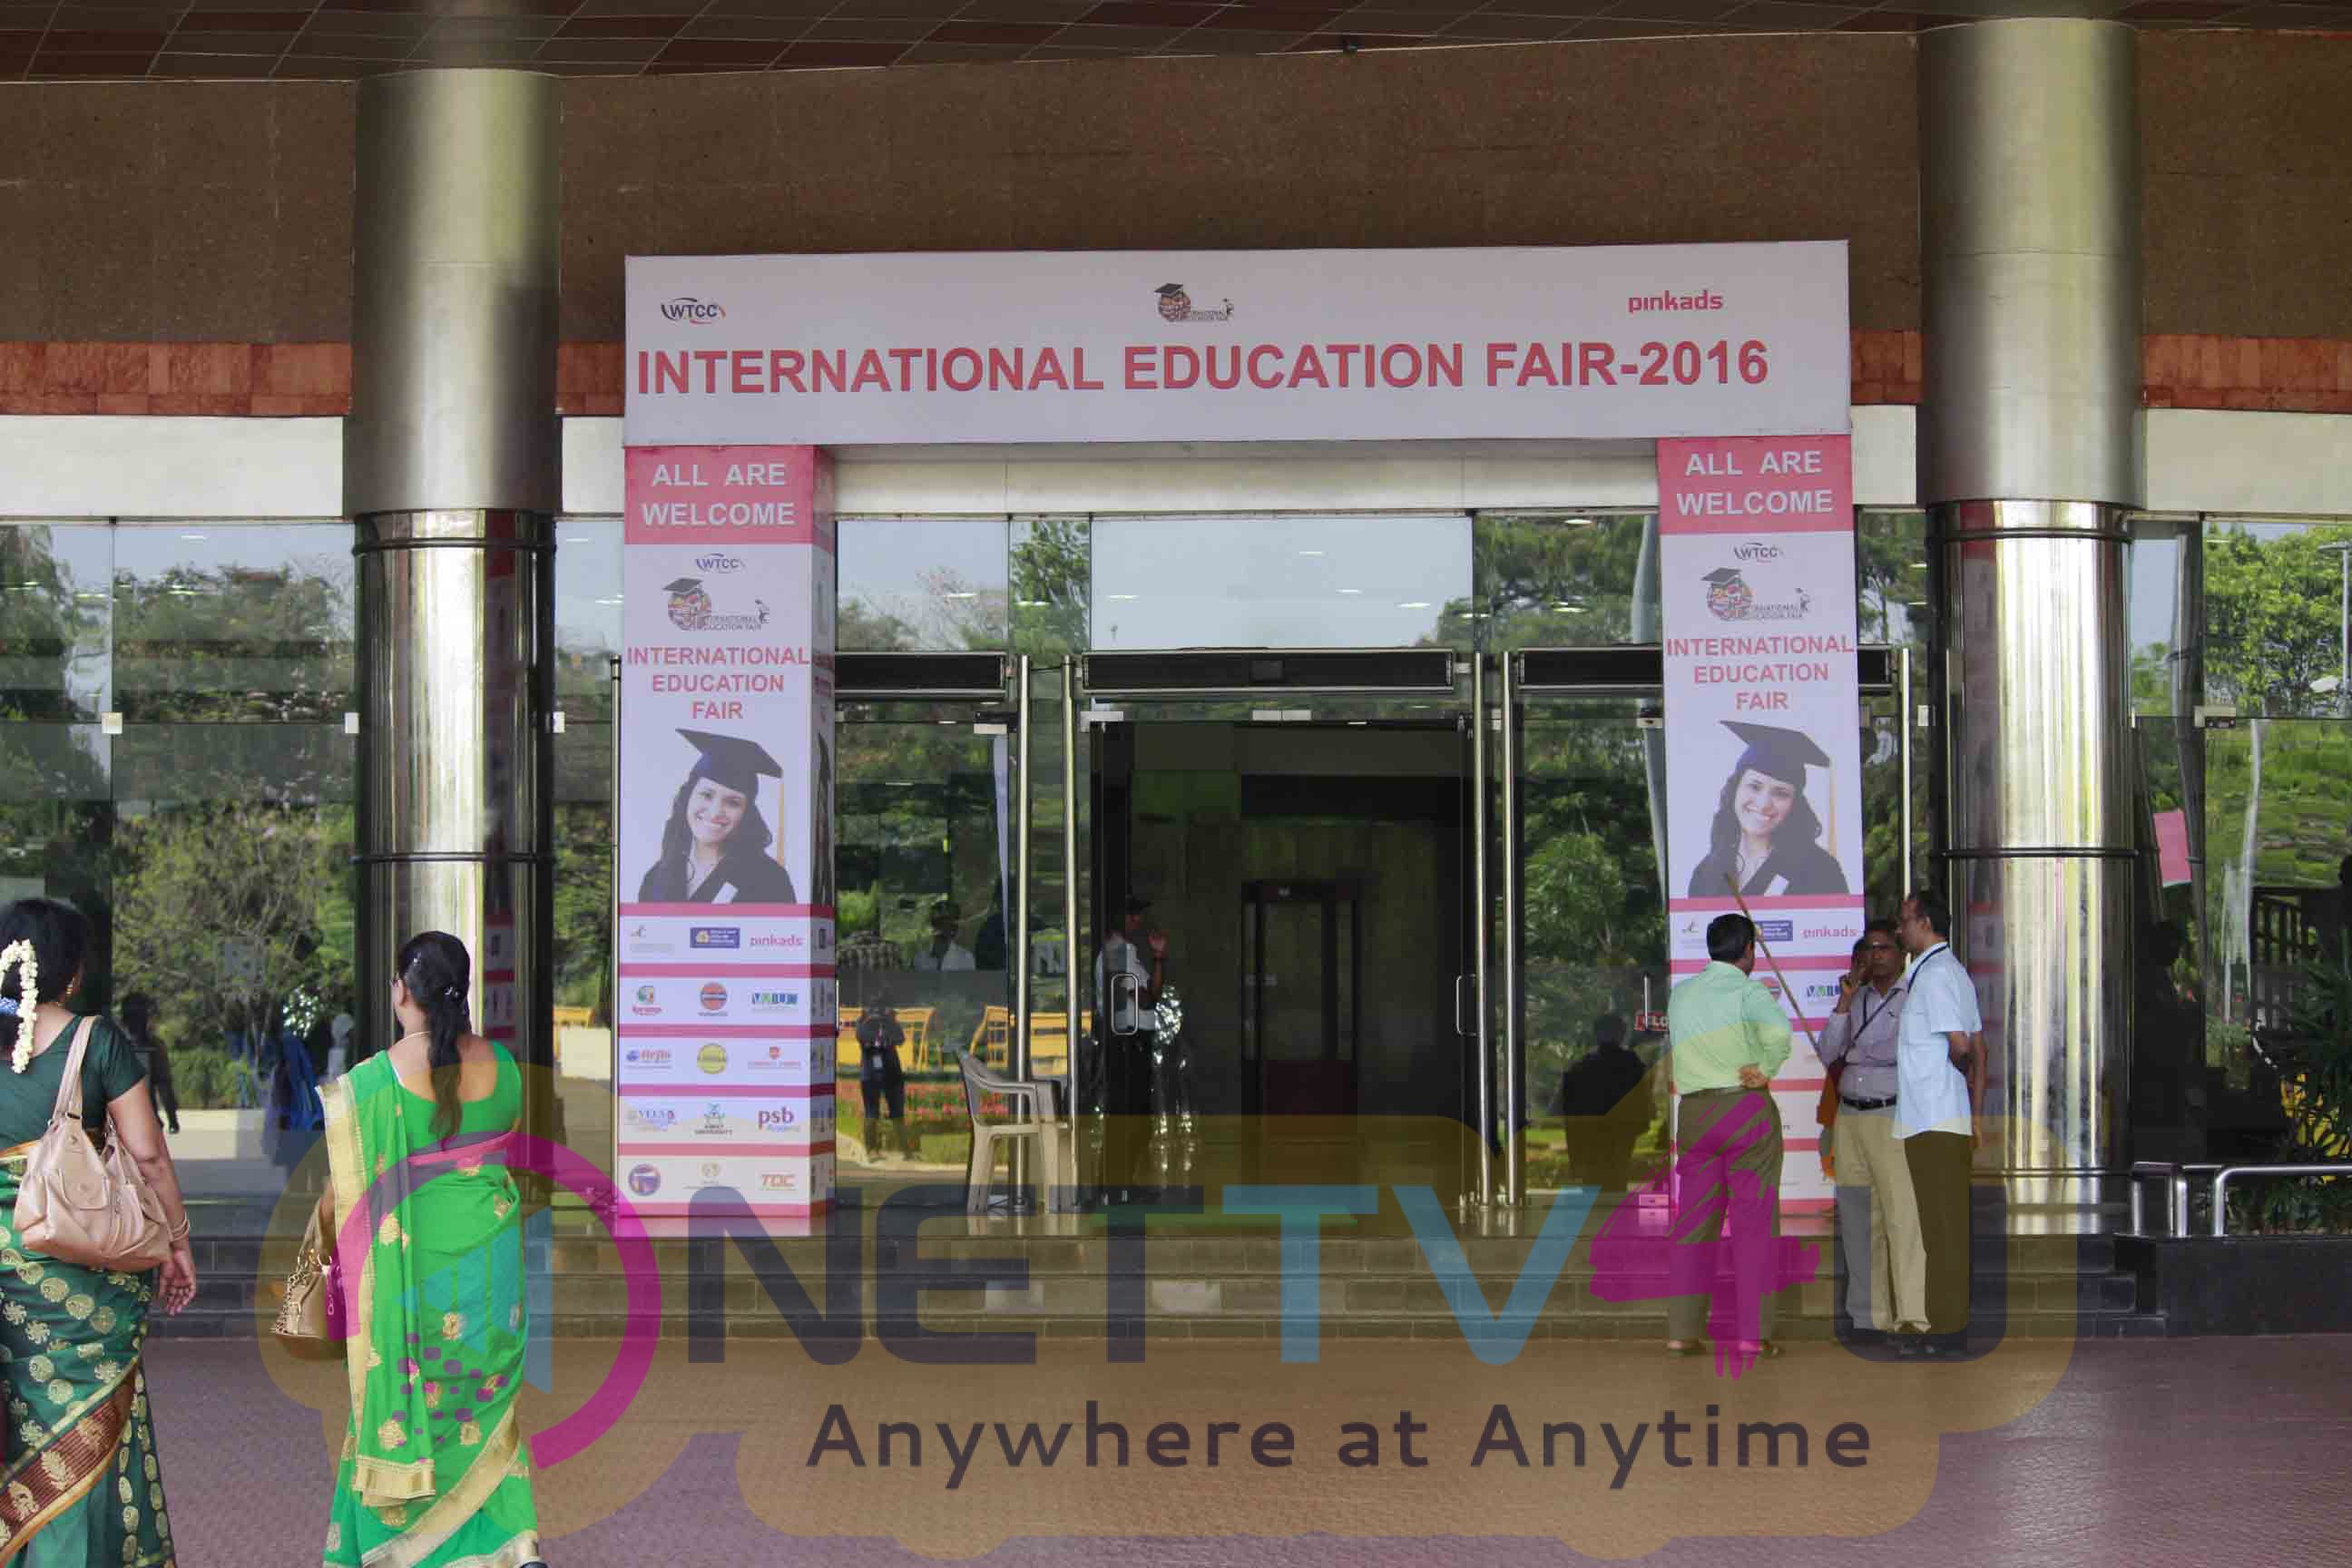  International Education Fair Grandeur Inauguration Attractive Stills Tamil Gallery